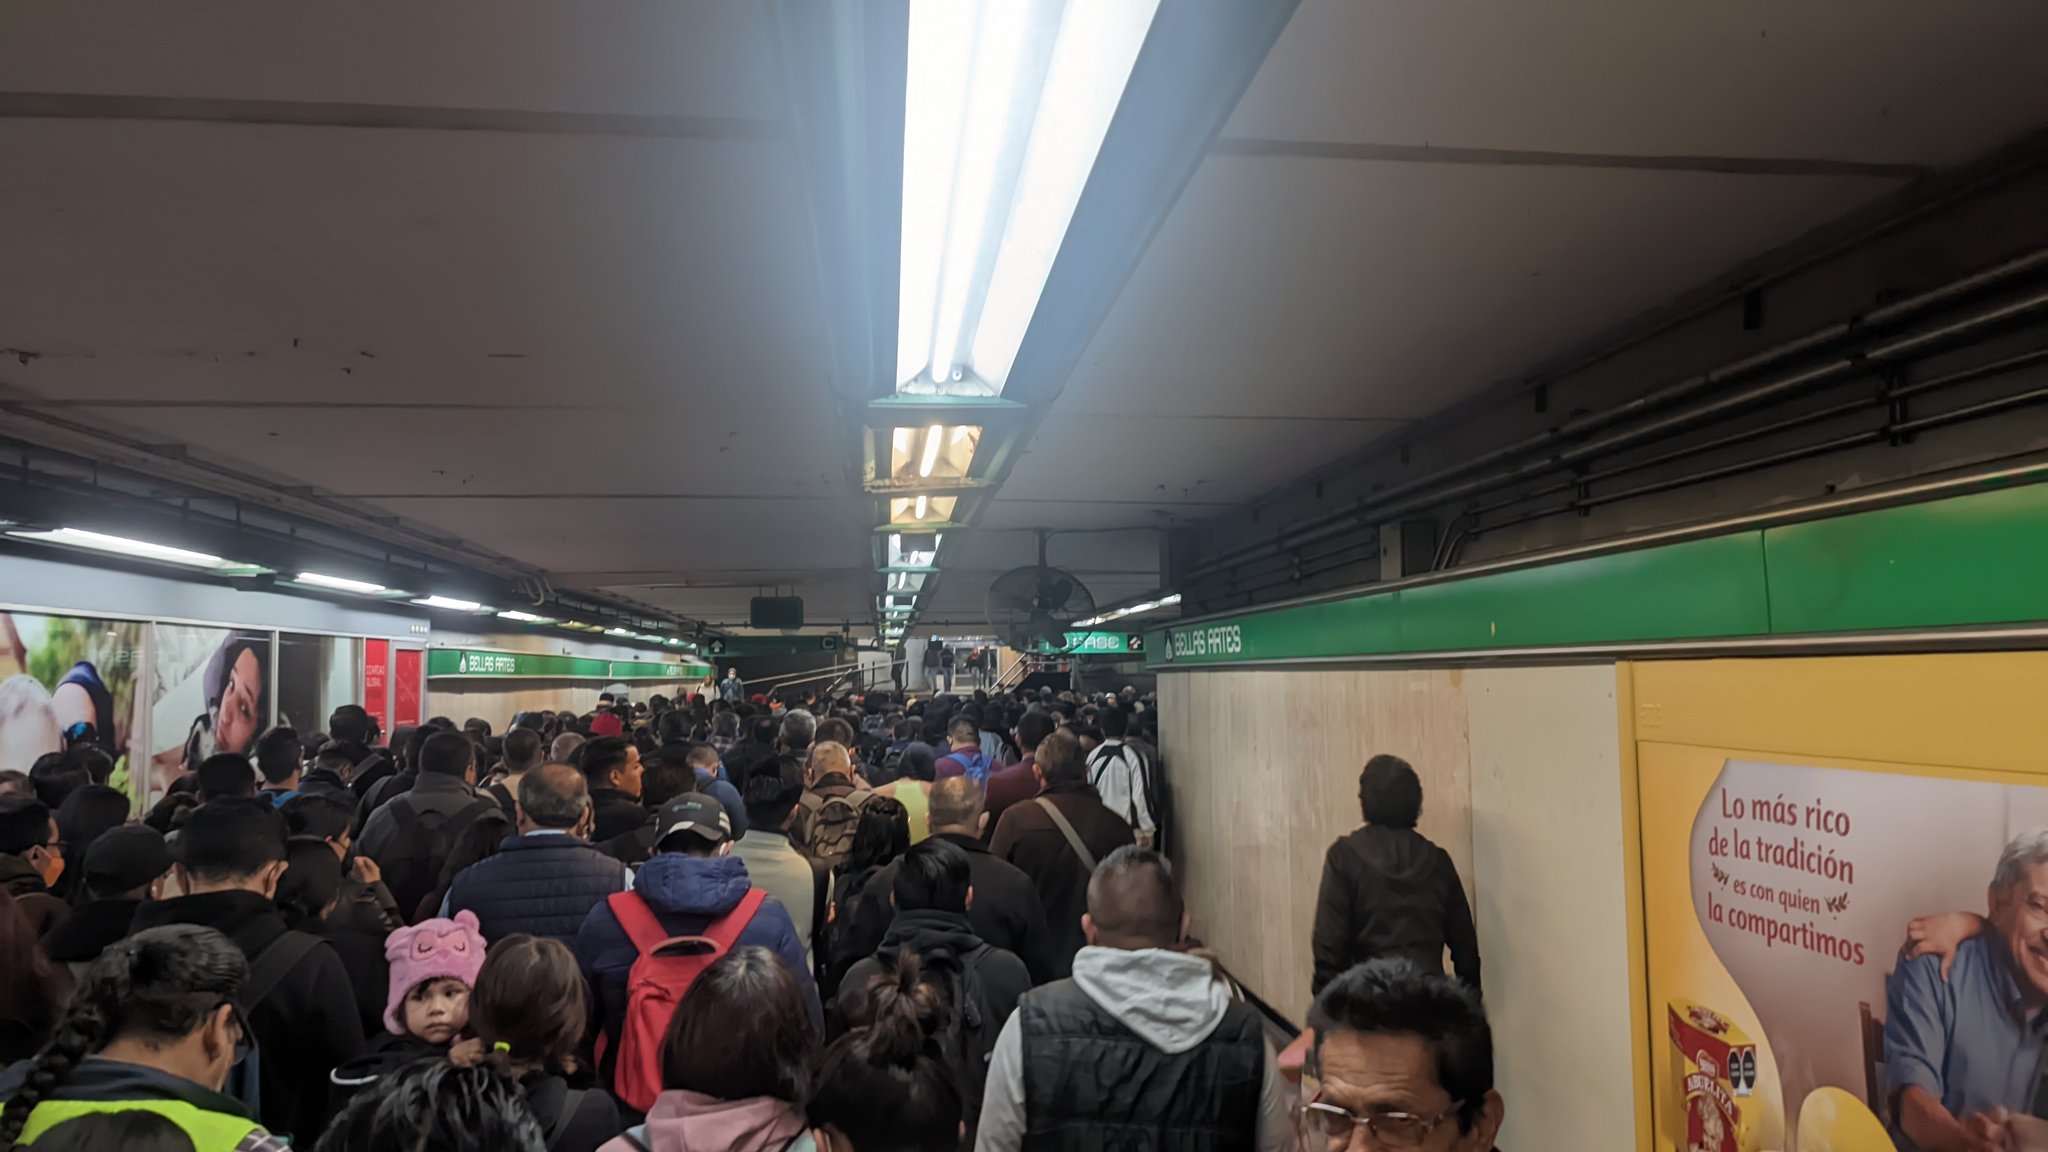 La mañana de este miércoles 08 de febrero al menos tres líneas del Sistema de Transporte Colectivo (STC) presentaron retrasos en el tránsito de trenes (Twitter/@uvitasdolly)